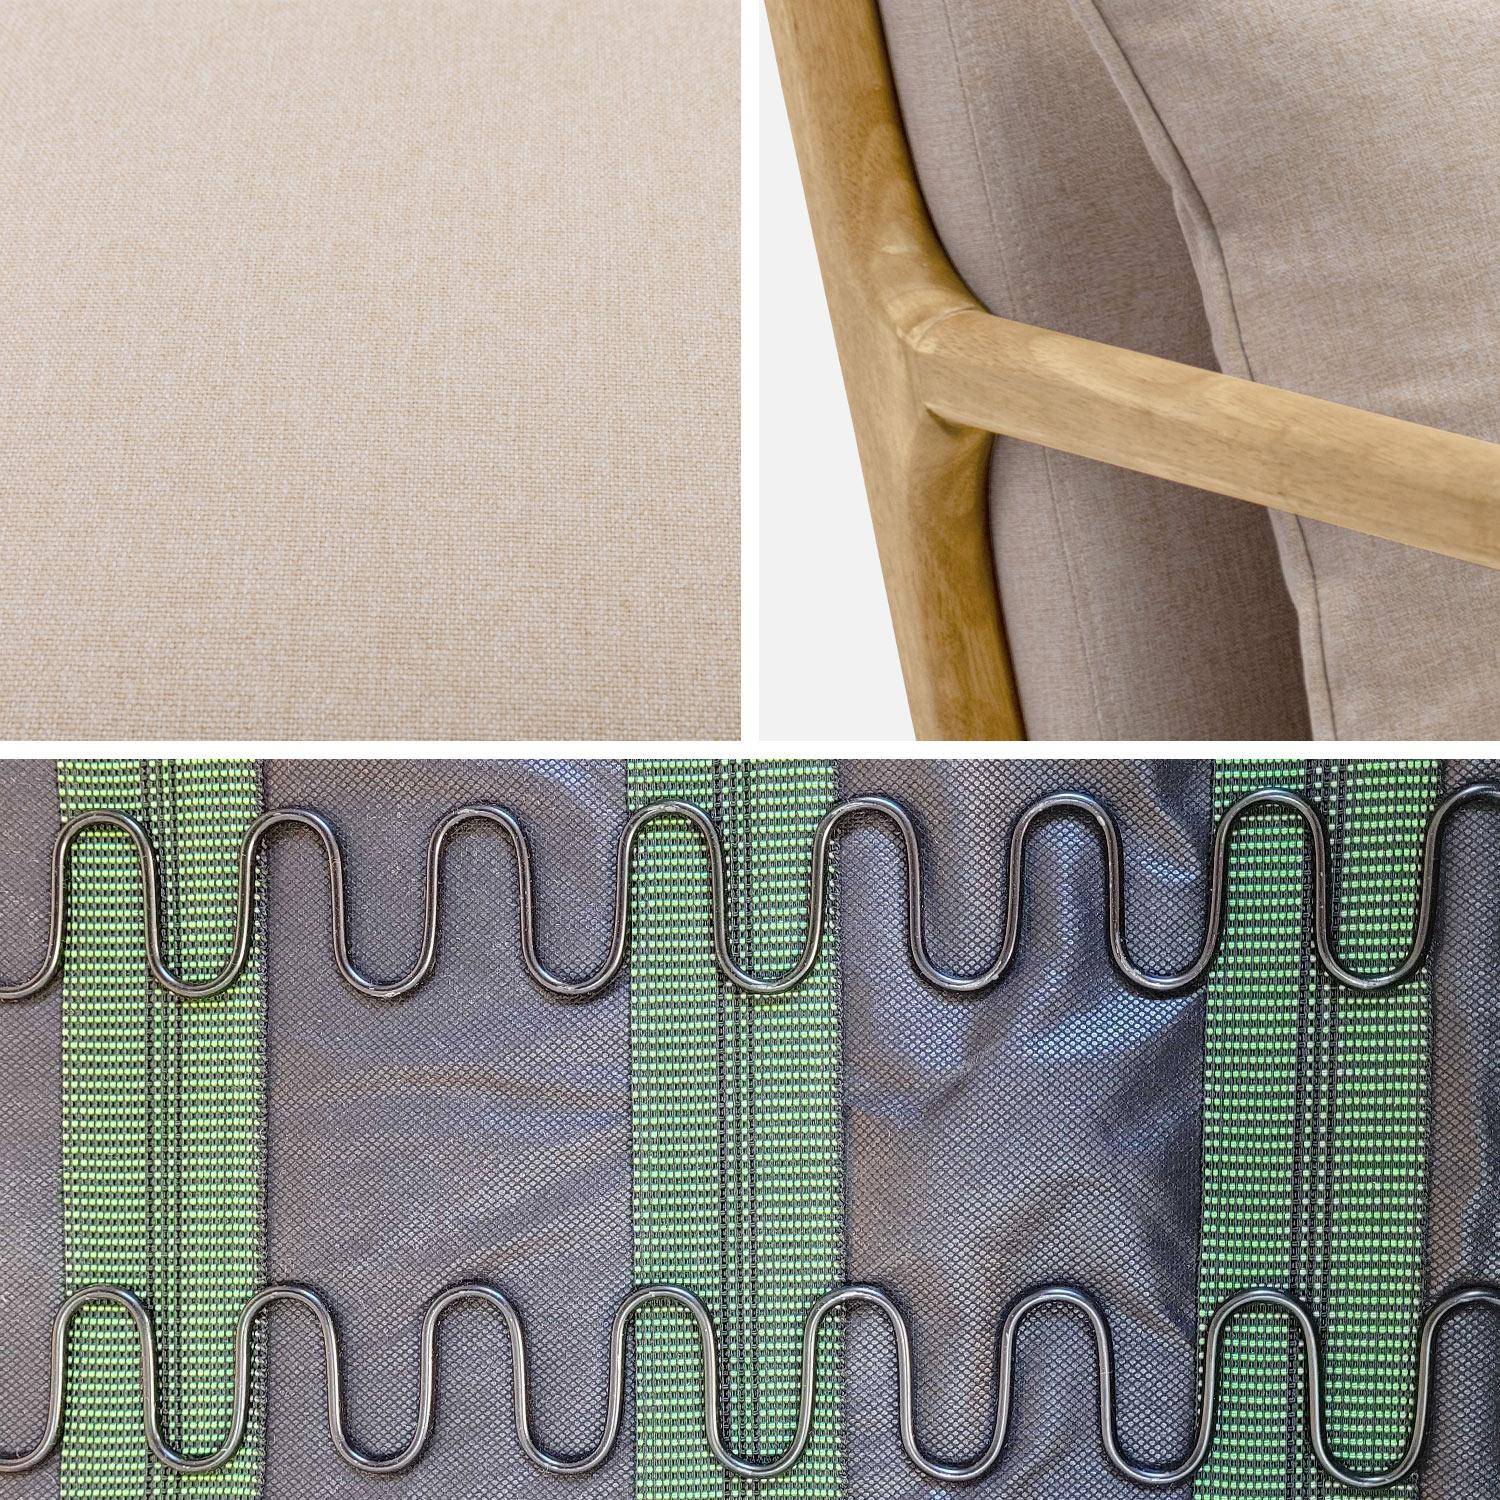 Poltrona de design em madeira e tecido, 1 assento reto fixo, pernas em bússola escandinavas, estrutura em madeira maciça, assento bege confortável Photo7